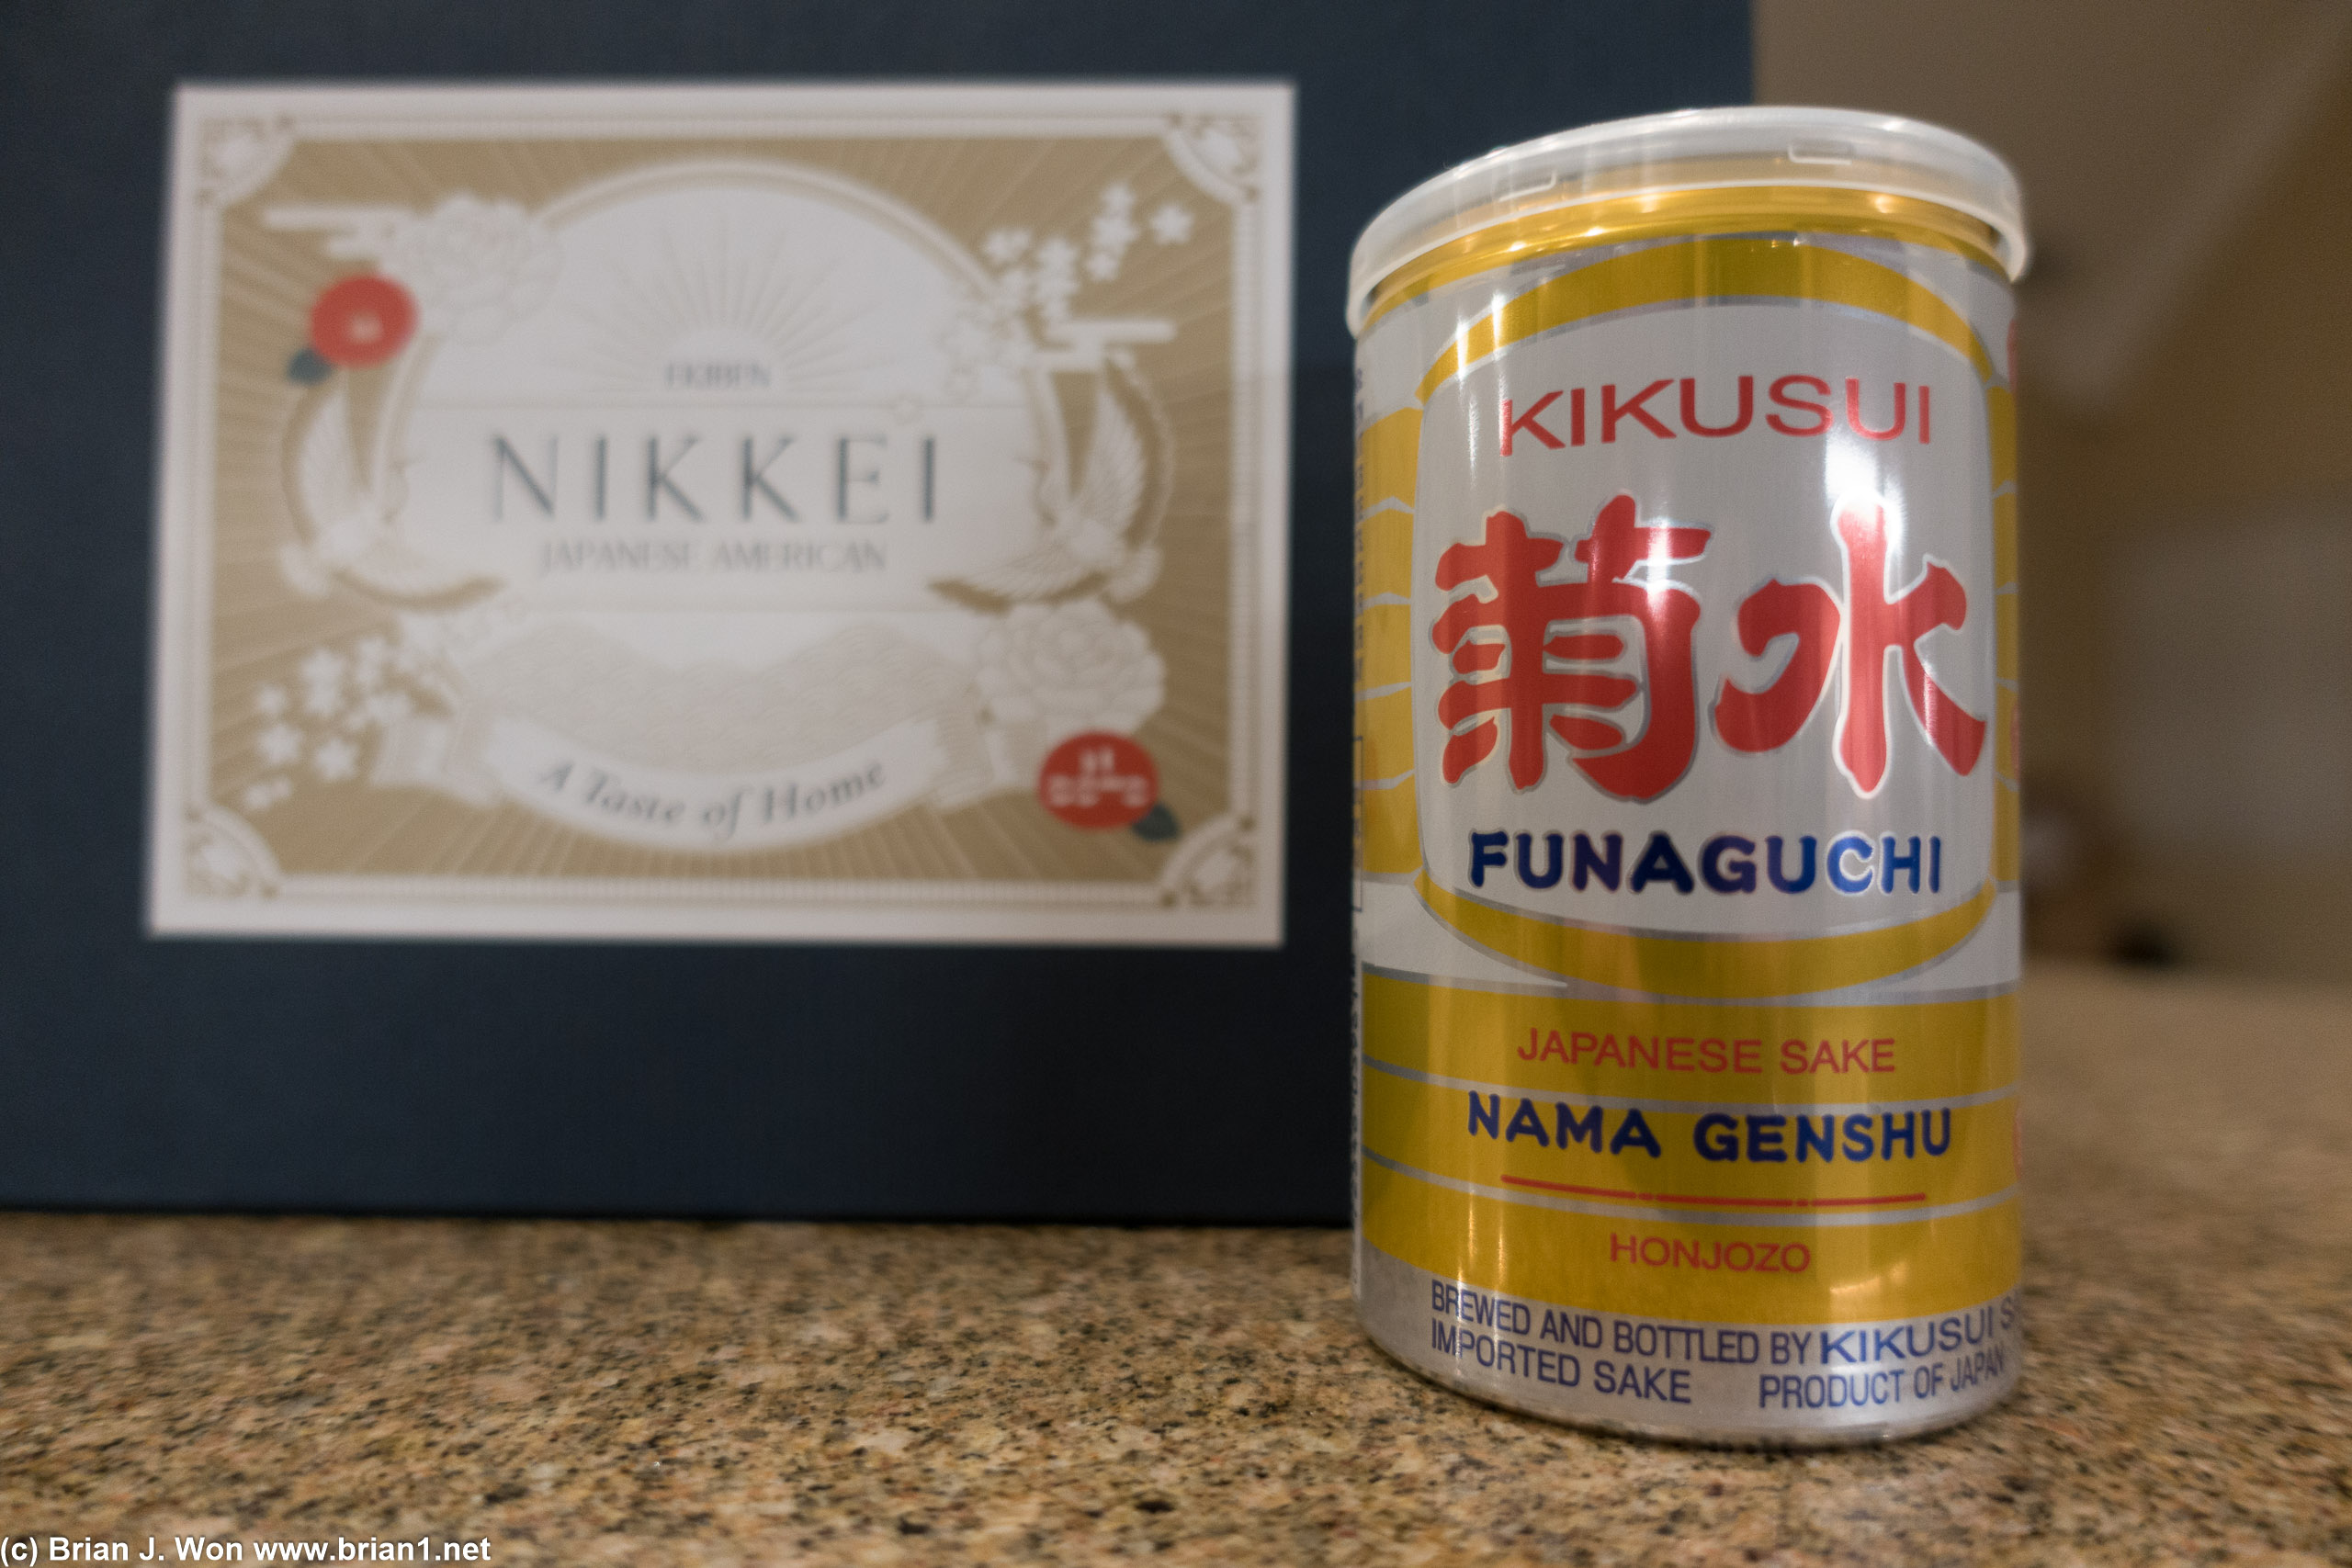 Free gift-- Kikusui Funaguchi sake.